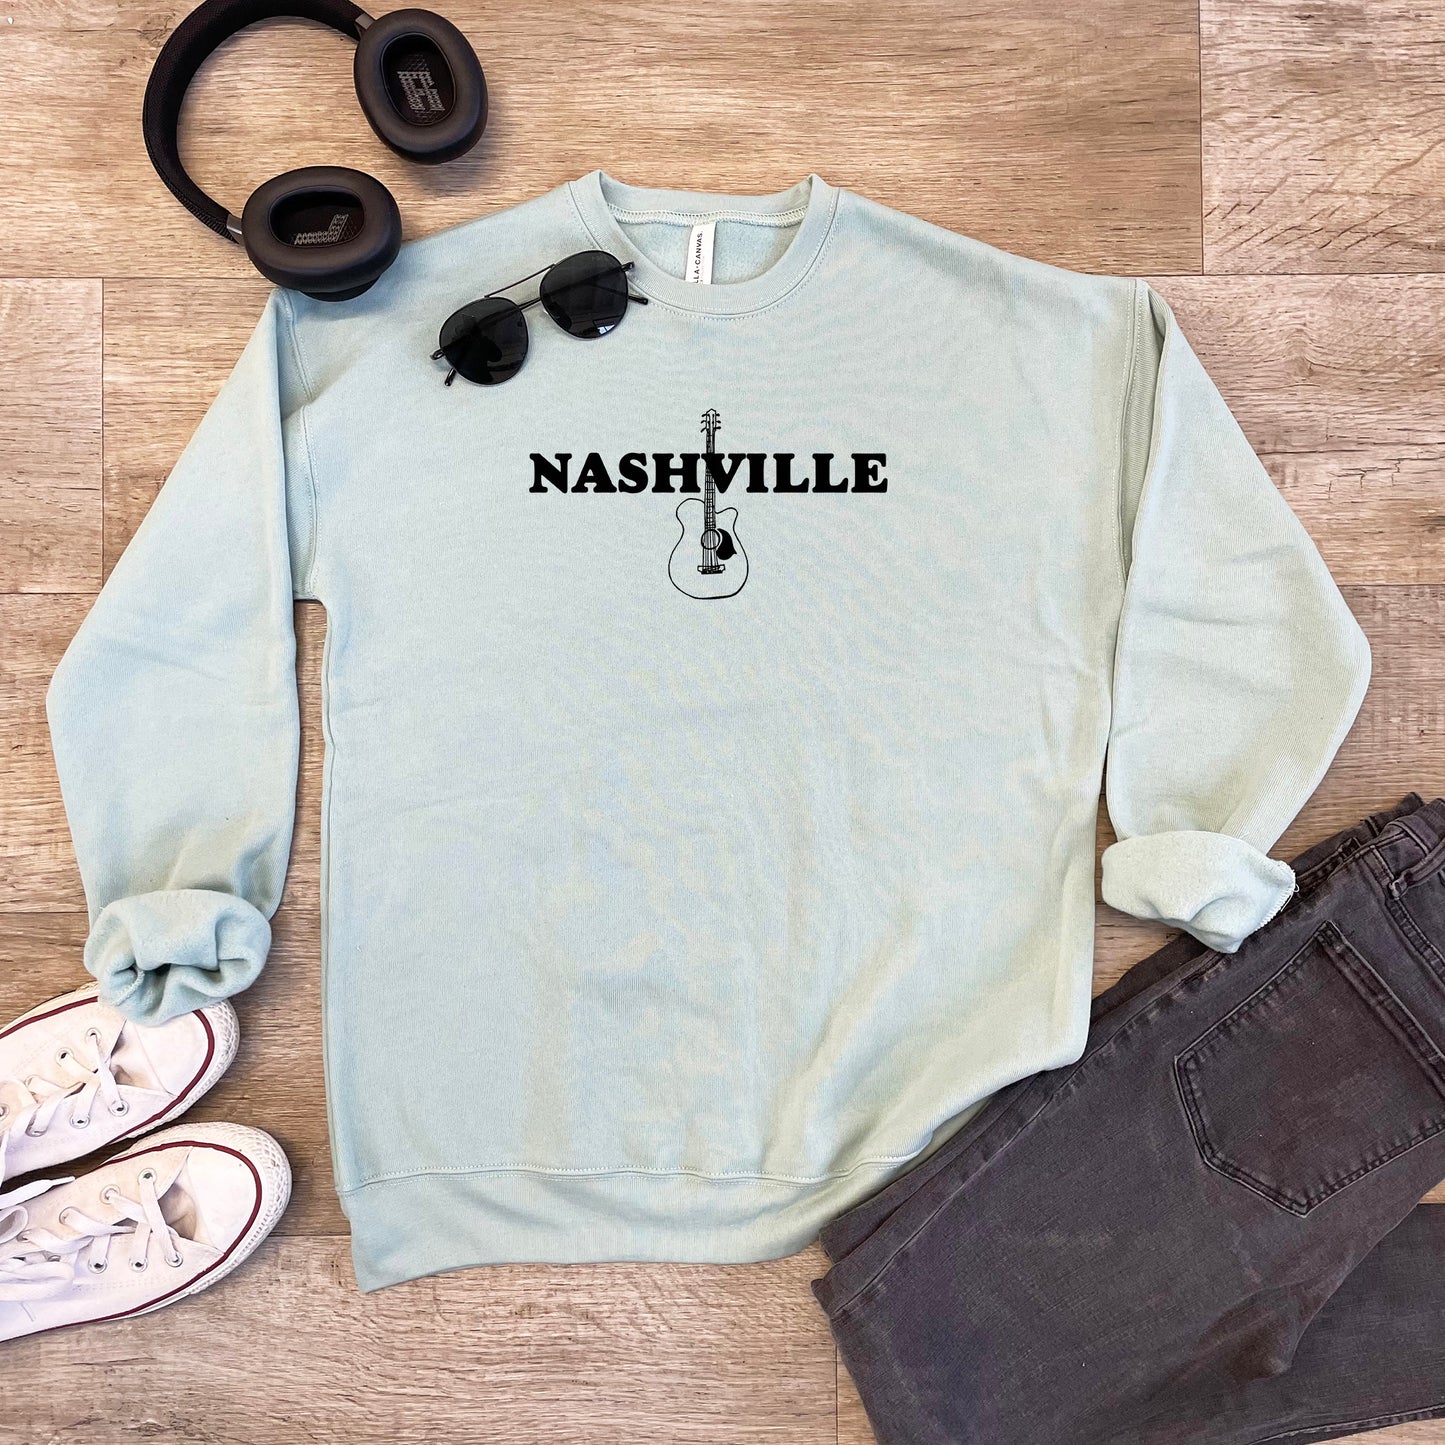 Nashville (TN) - Unisex Sweatshirt - Heather Gray or Dusty Blue